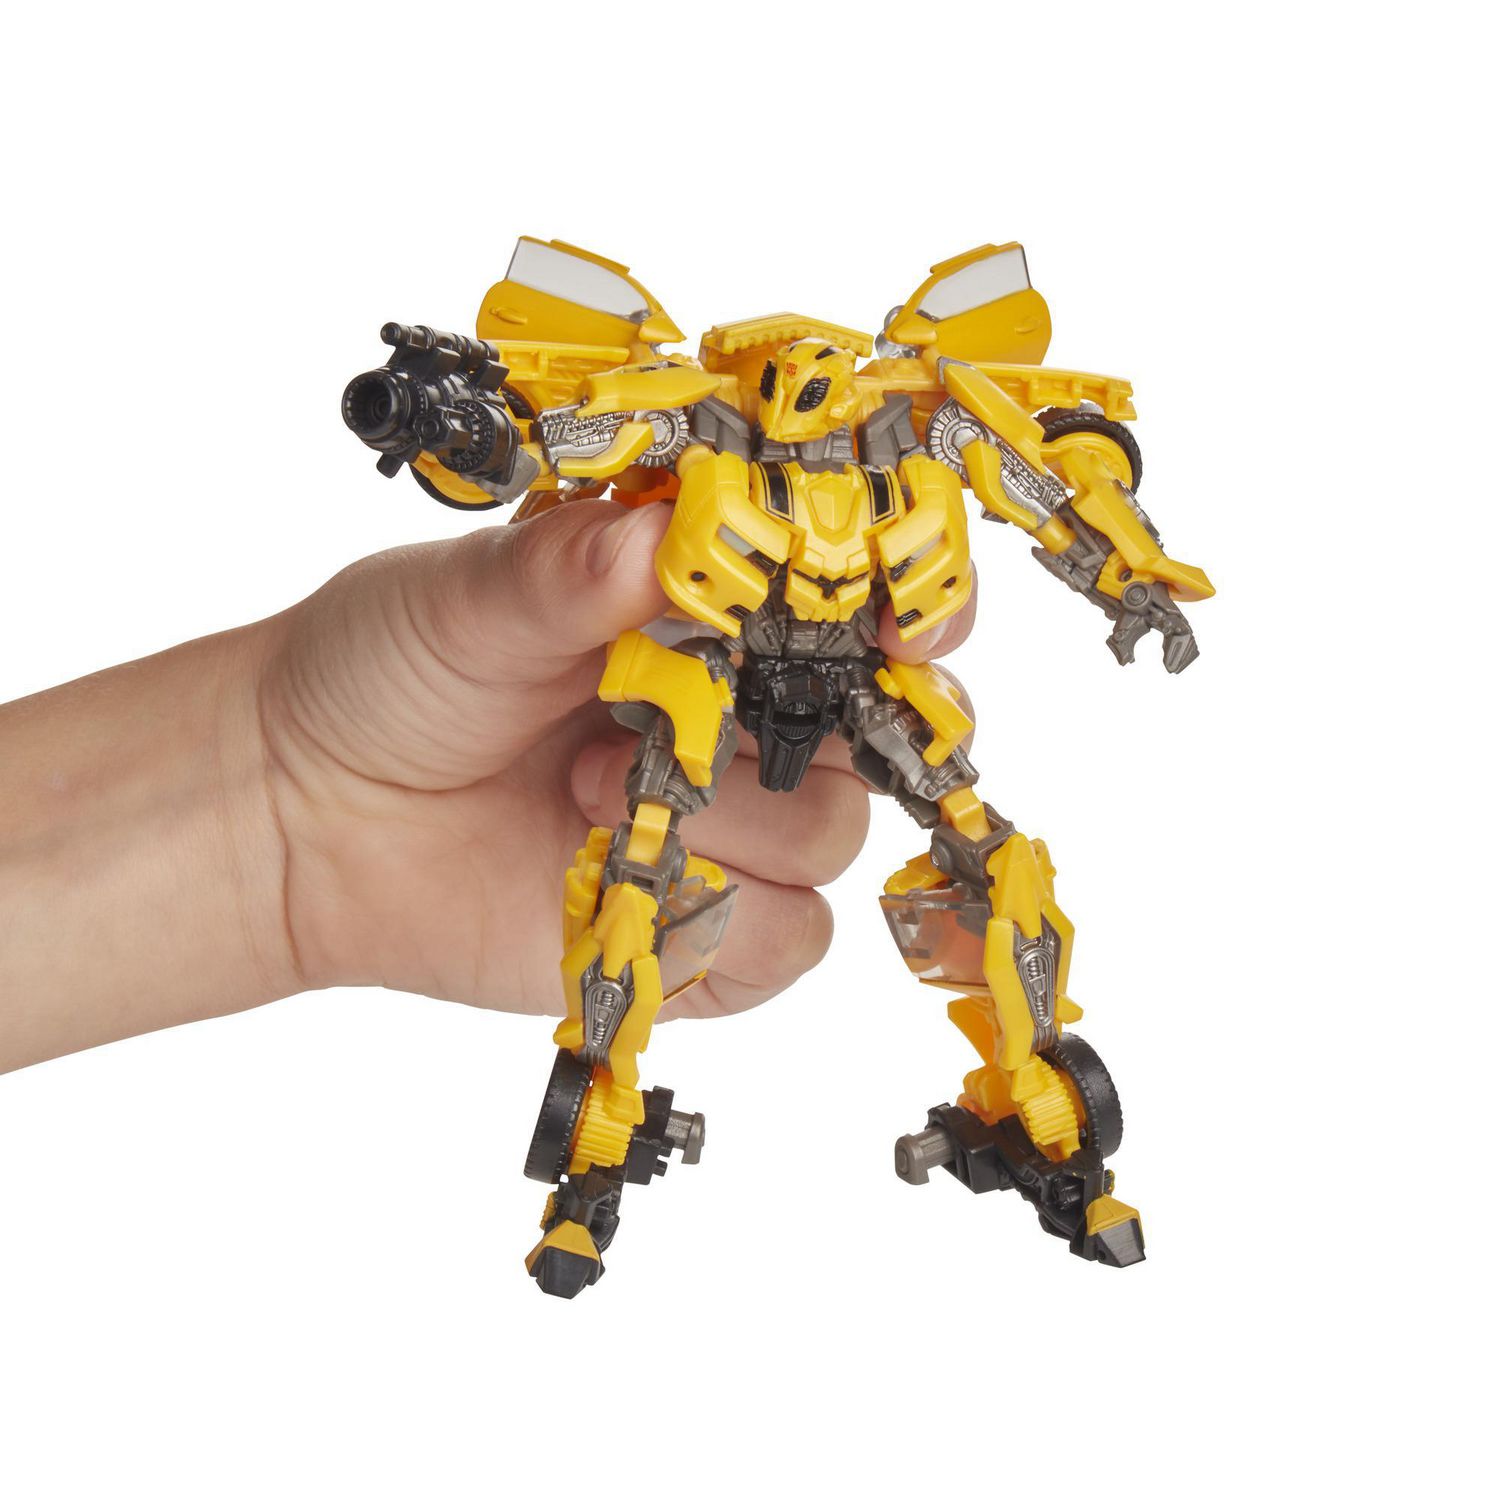 Studio Series 49 Deluxe Class Transformers: Movie 1 Bumblebee Action Figure